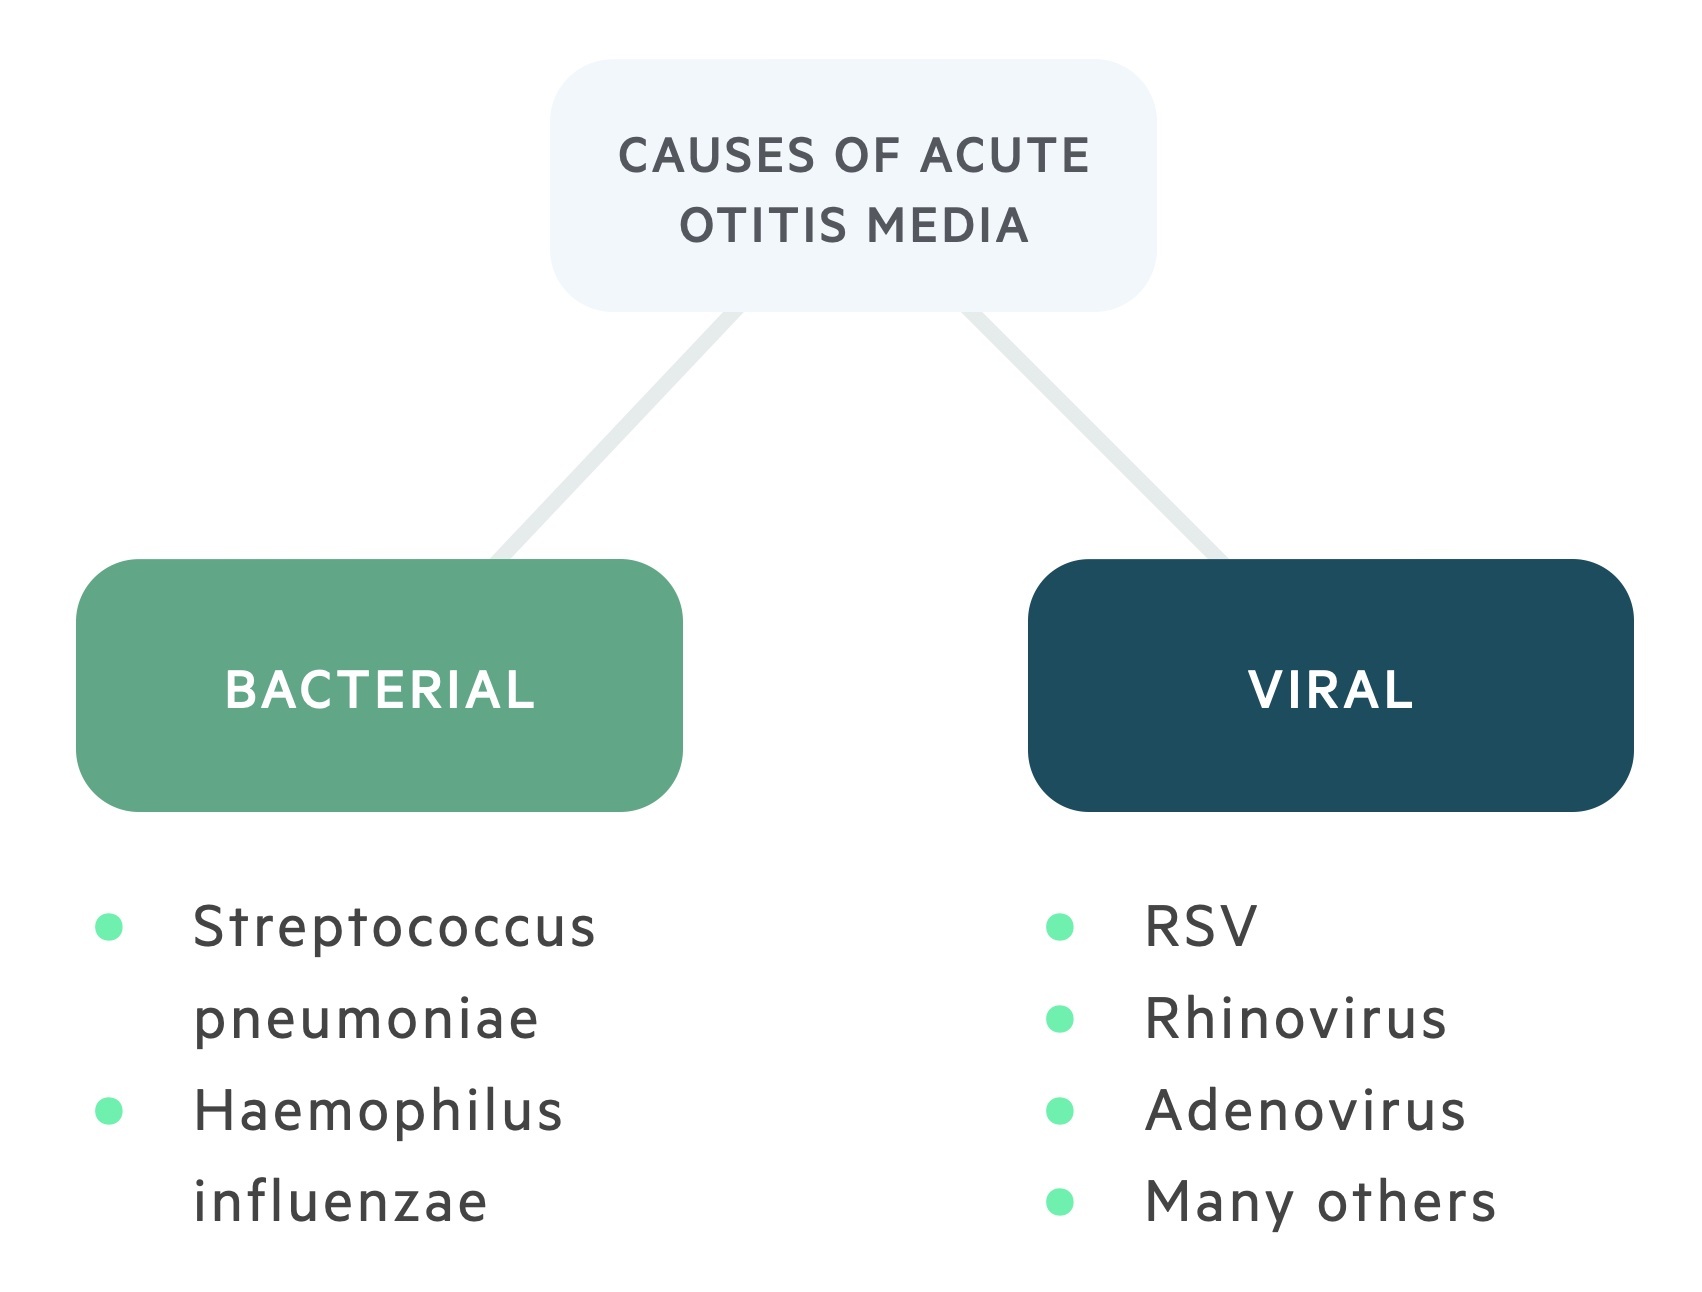 Causes of acute otitis media